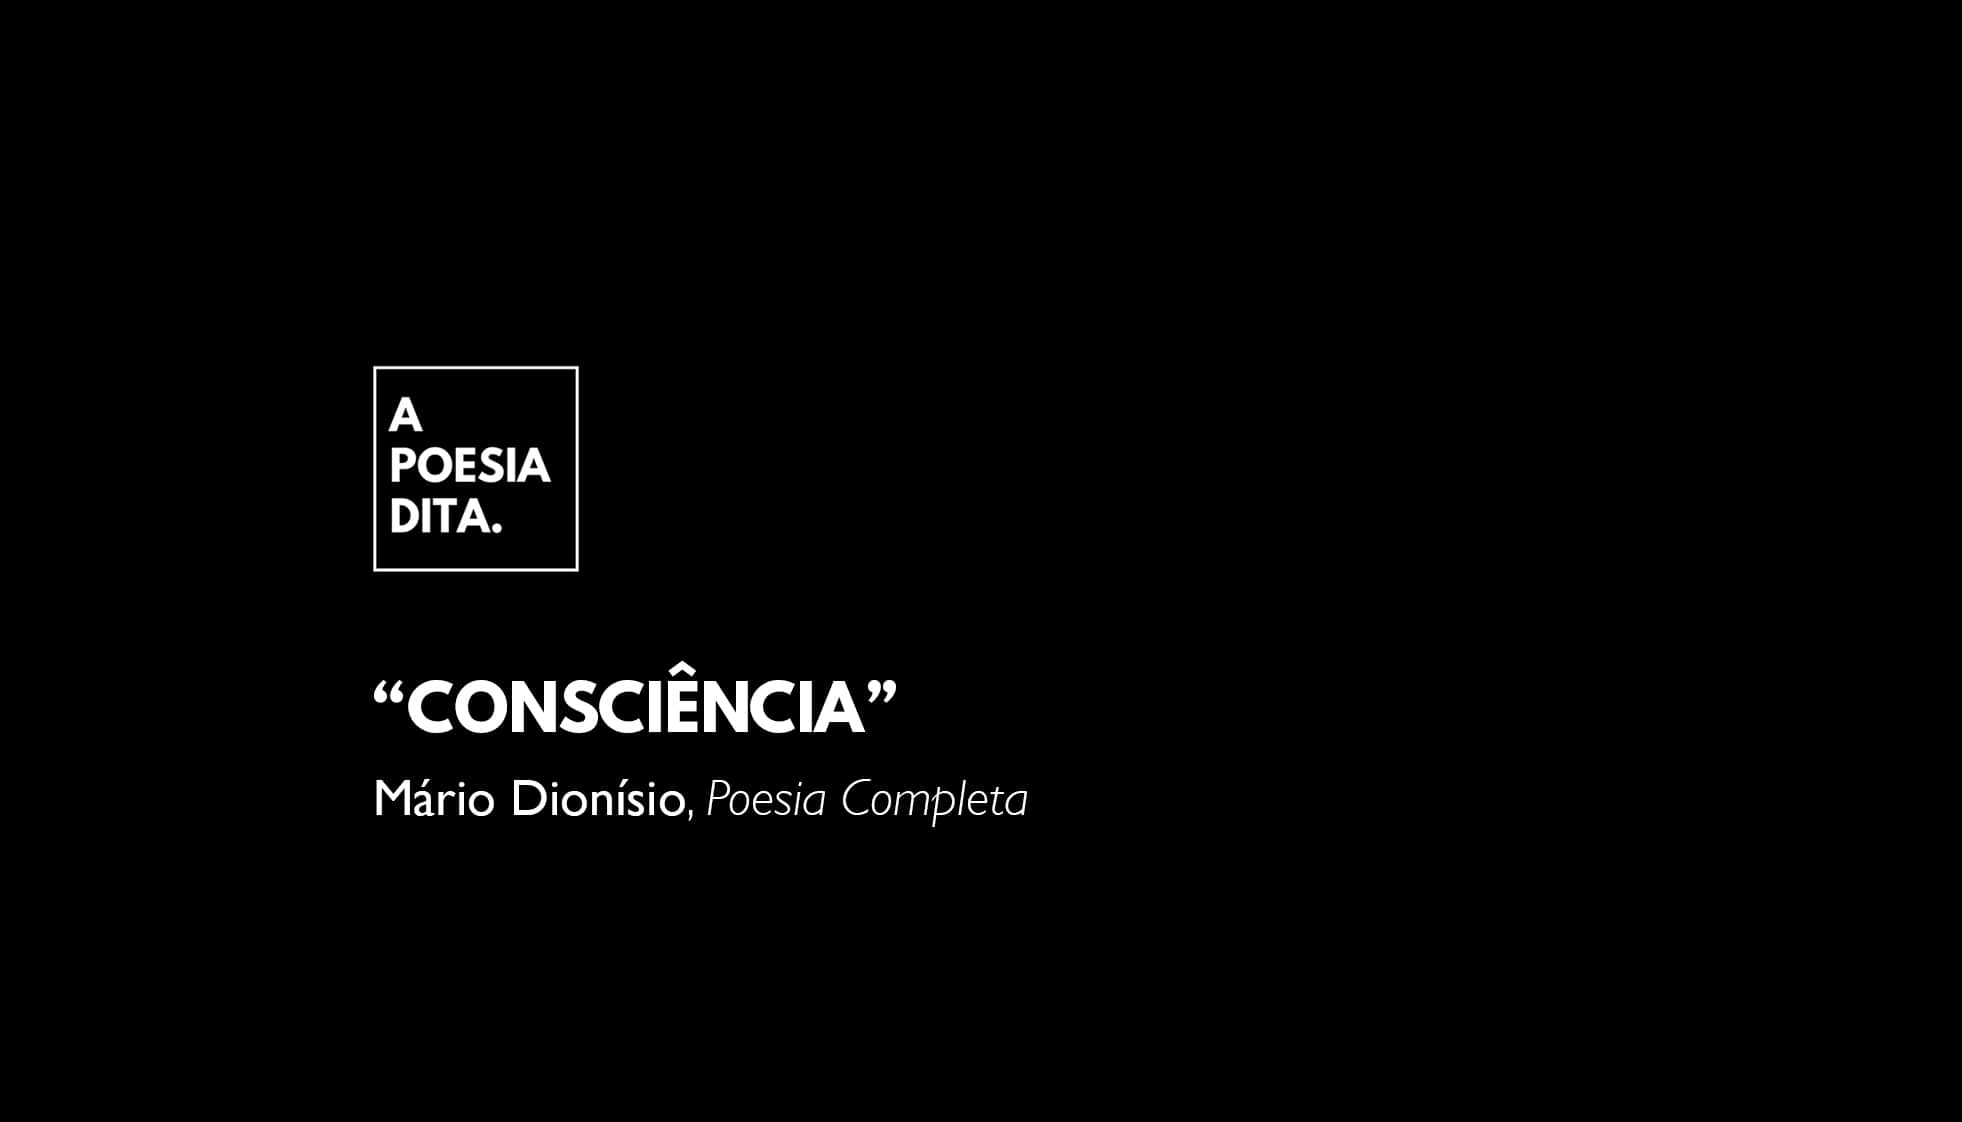 Consciência, um poema de Mário Dionísio n’A Poesia Dita.